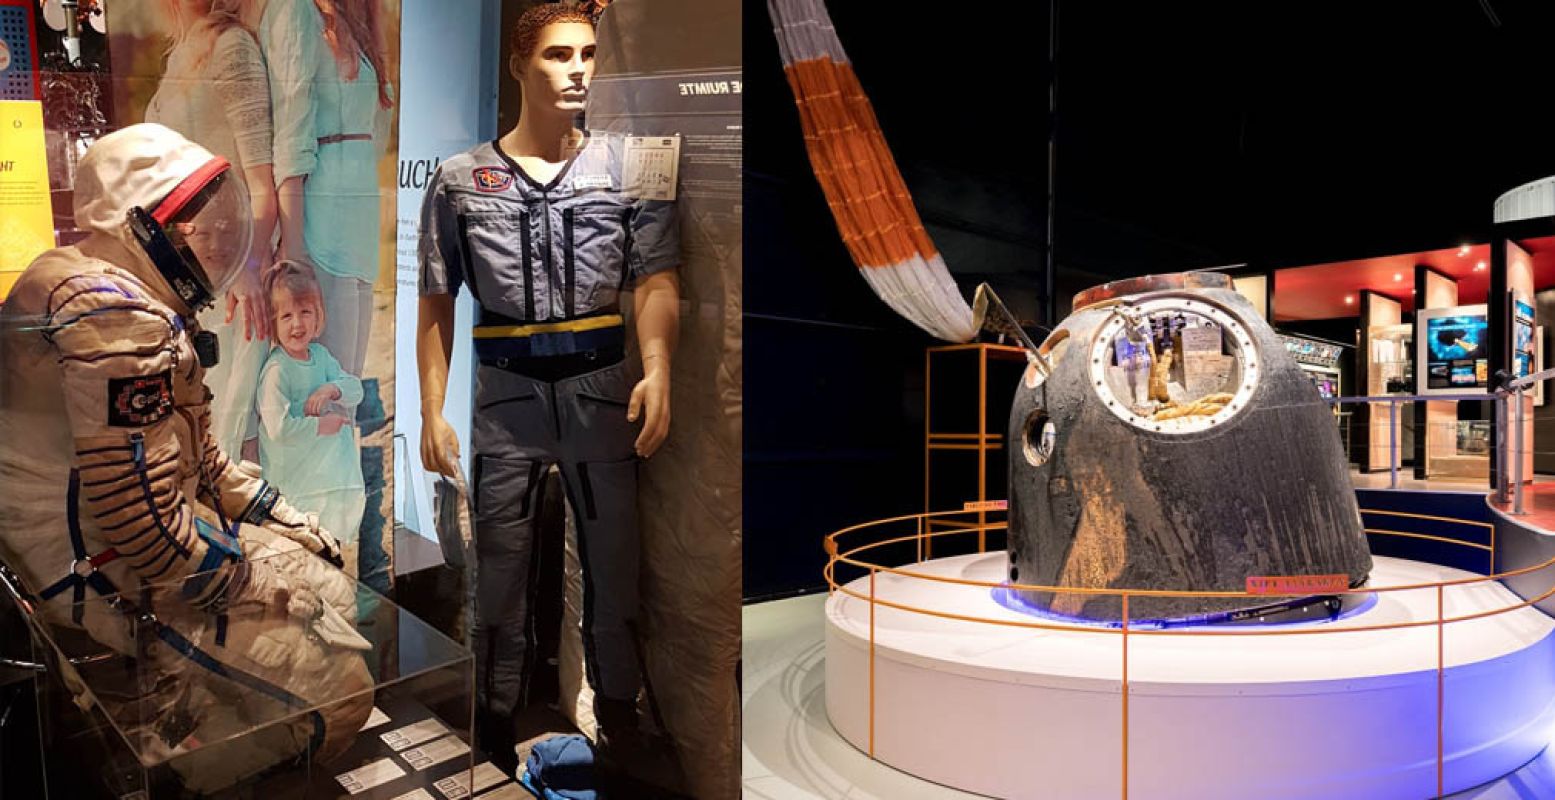 Voorwerpen die in de ruimte zijn geweest, inclusief de Soyuz-capsule van André Kuipers. Foto: Space Expo